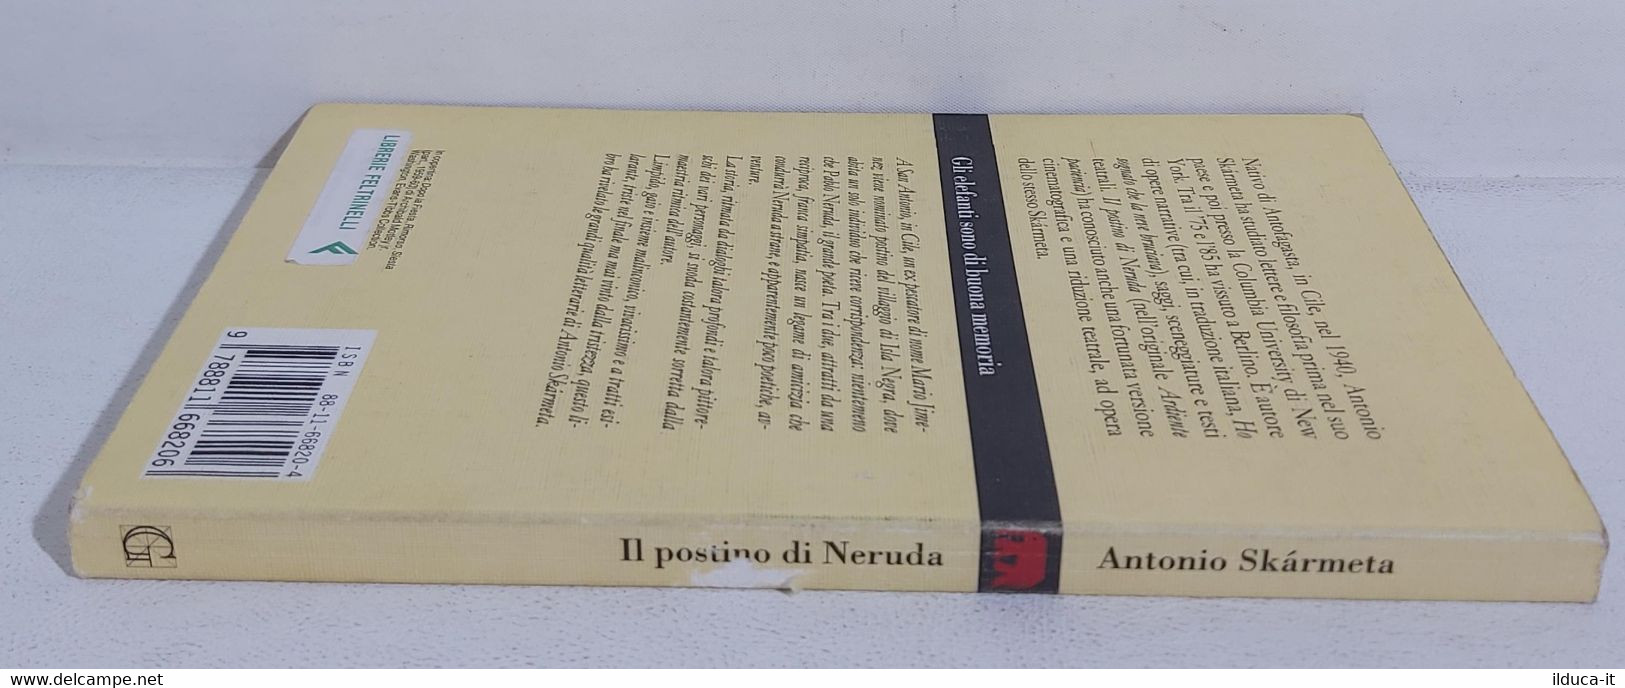 I106604 Antonio Skarmeta - Il Postino Di Neruda - Garzanti 1994 - Sagen En Korte Verhalen